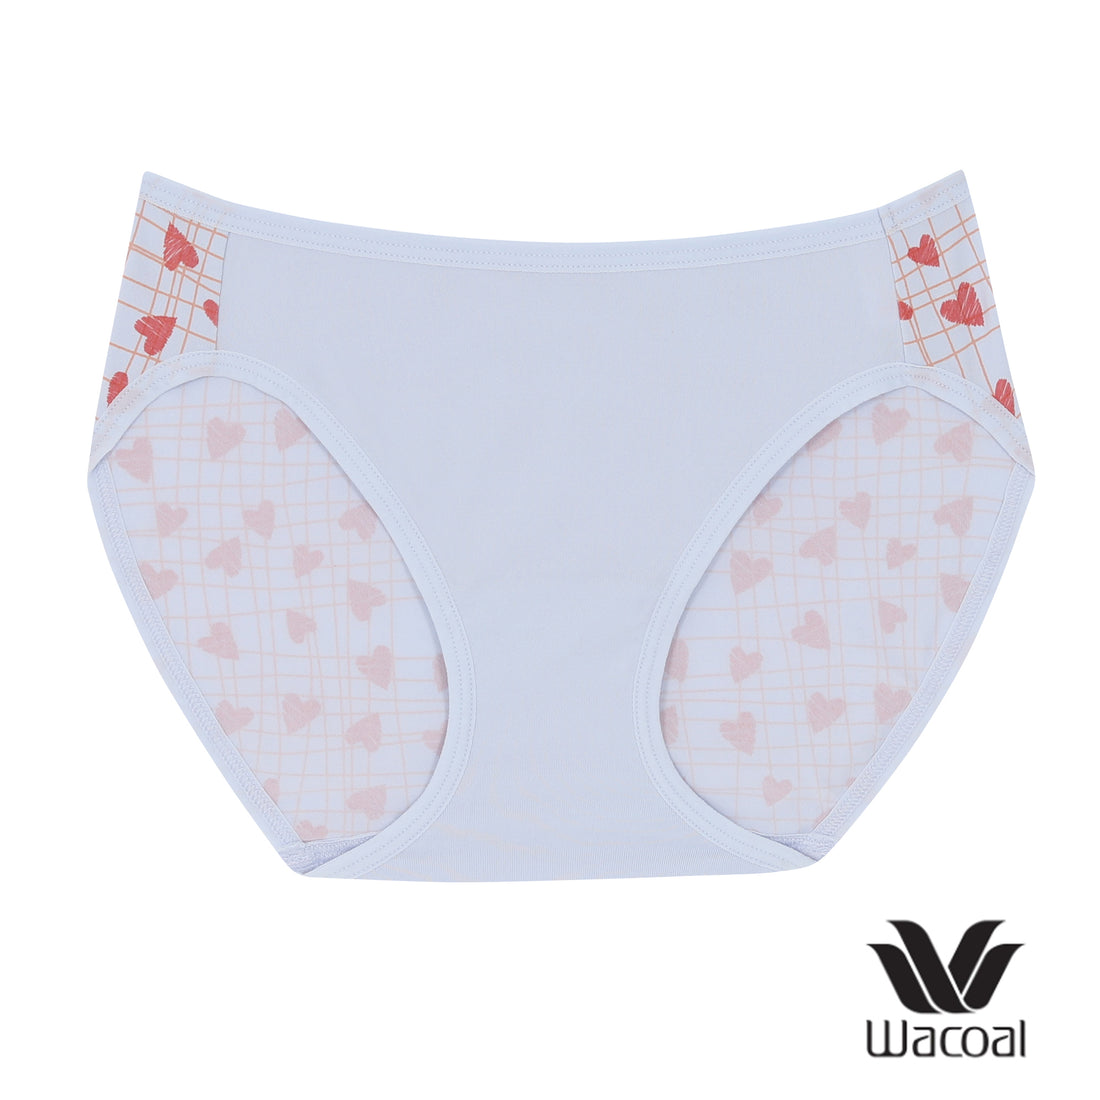 Wacoal Panty กางเกงในรูปแบบบิกินี รุ่น WU2C04 สีเทา (GY)